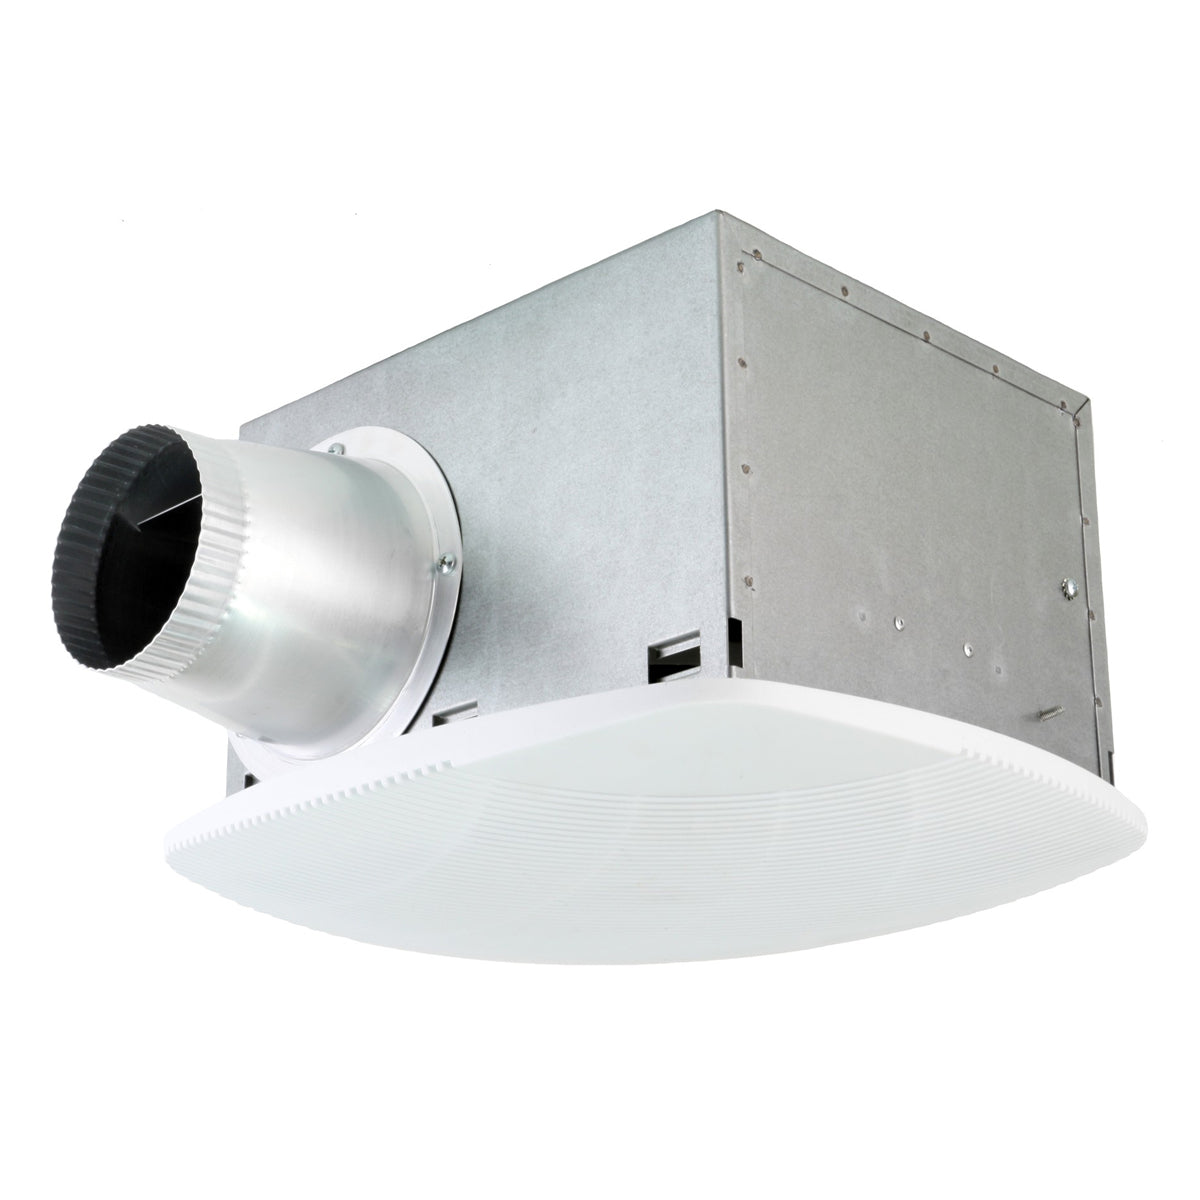 SH Series Ceiling Exhaust Bath Fans and Fan-Lights – Maxx Air